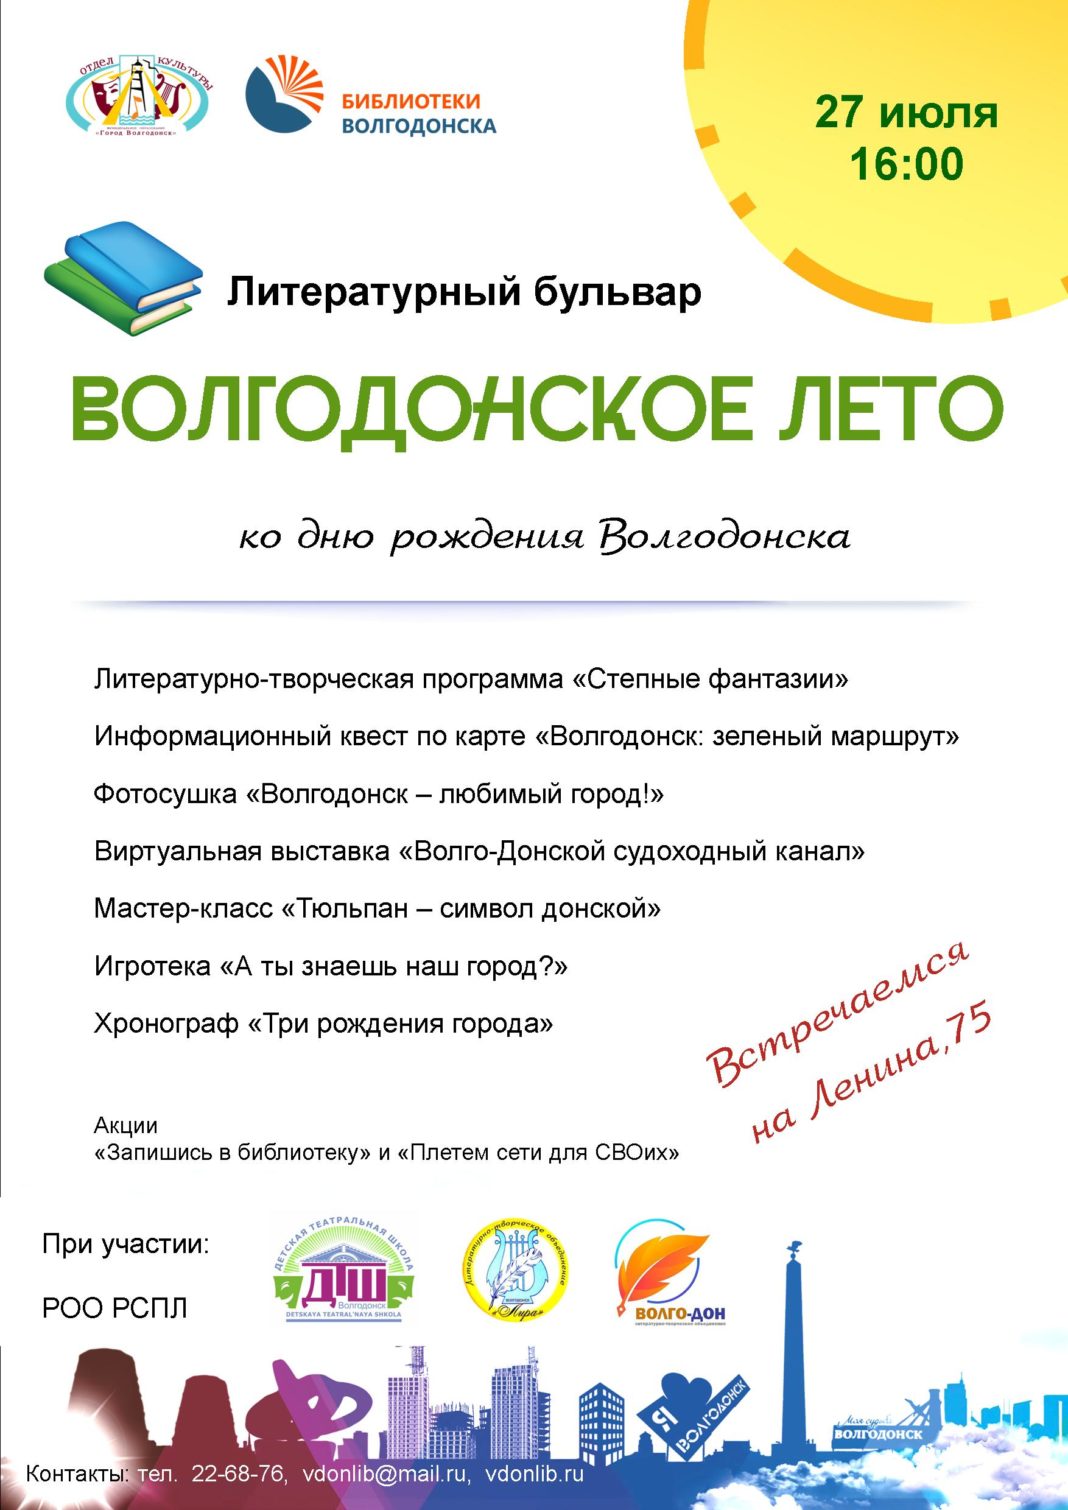 Жителей города приглашают на литературный бульвар «Волгодонское лето»